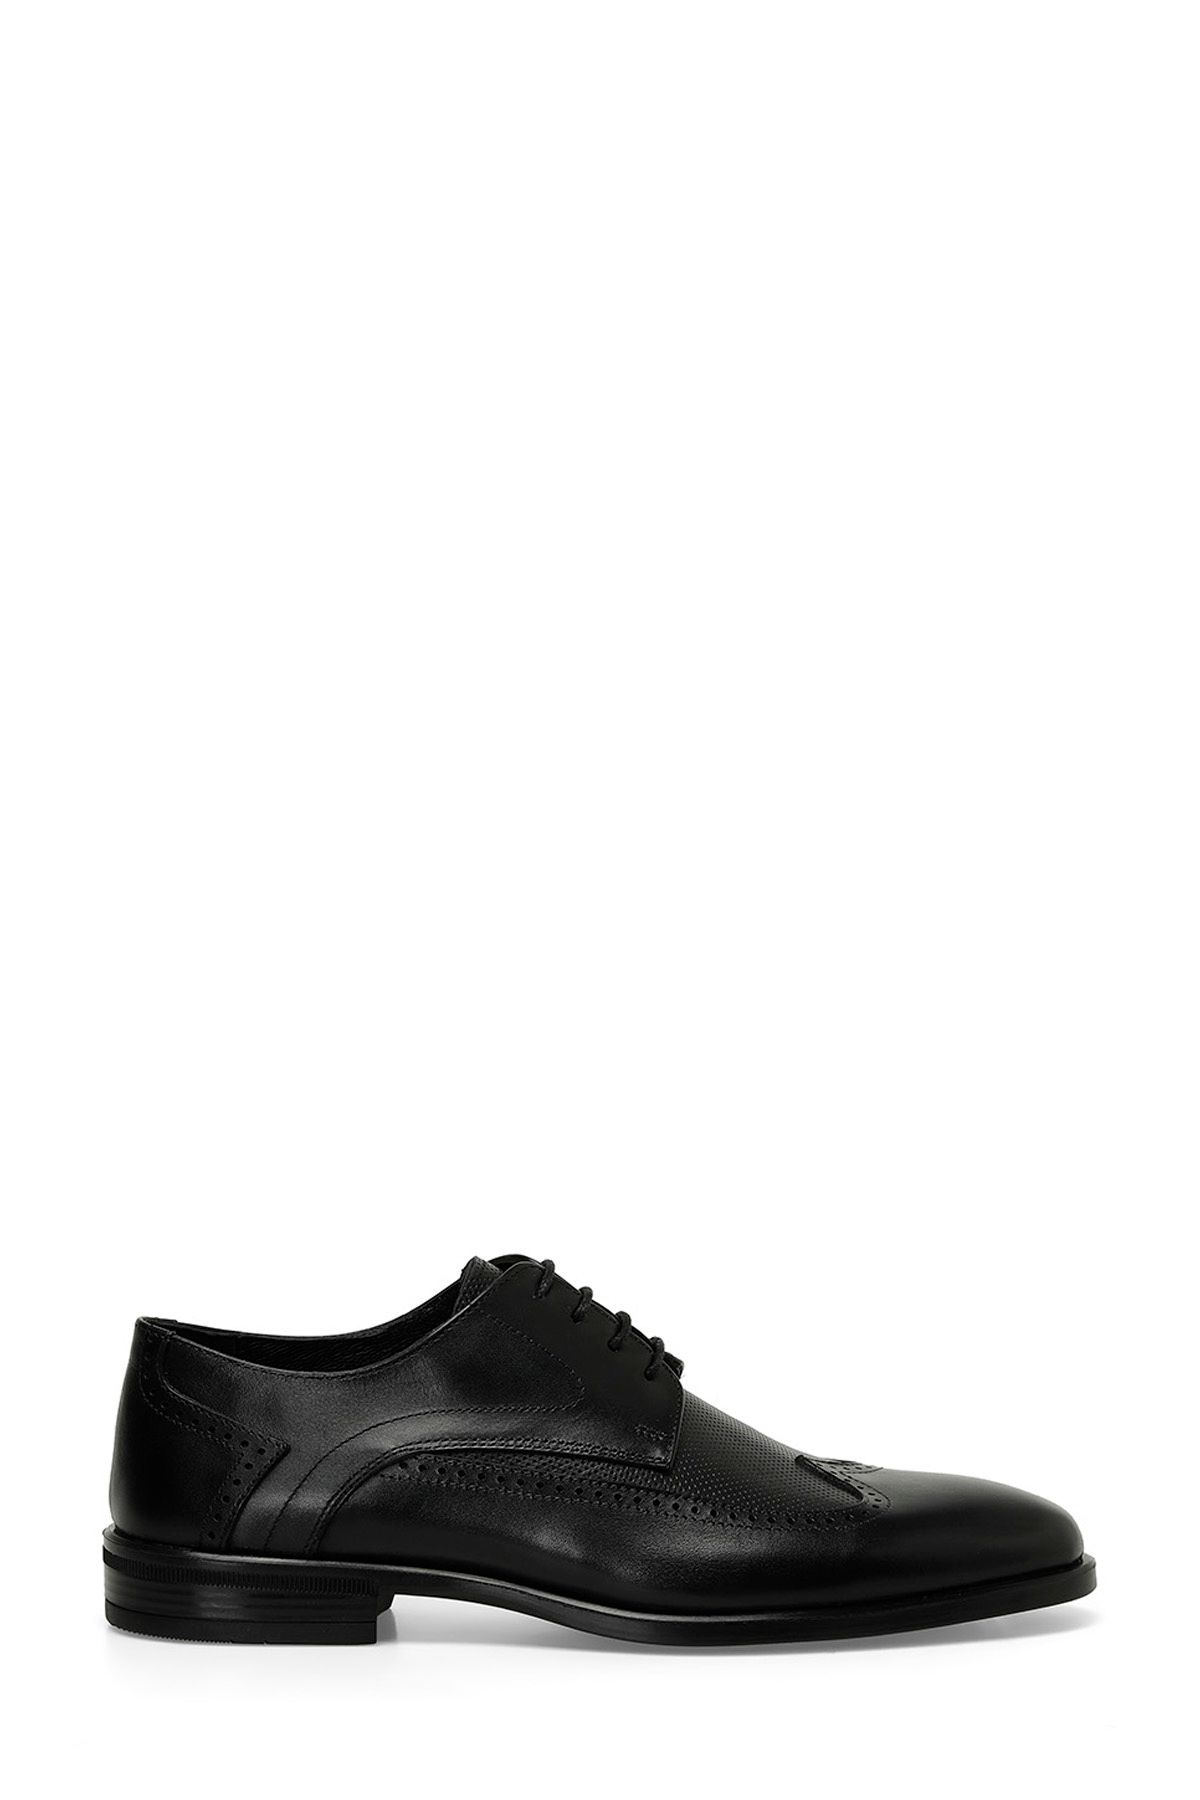 İnci INCI IRON 4FX Siyah Erkek Klasik Ayakkabı